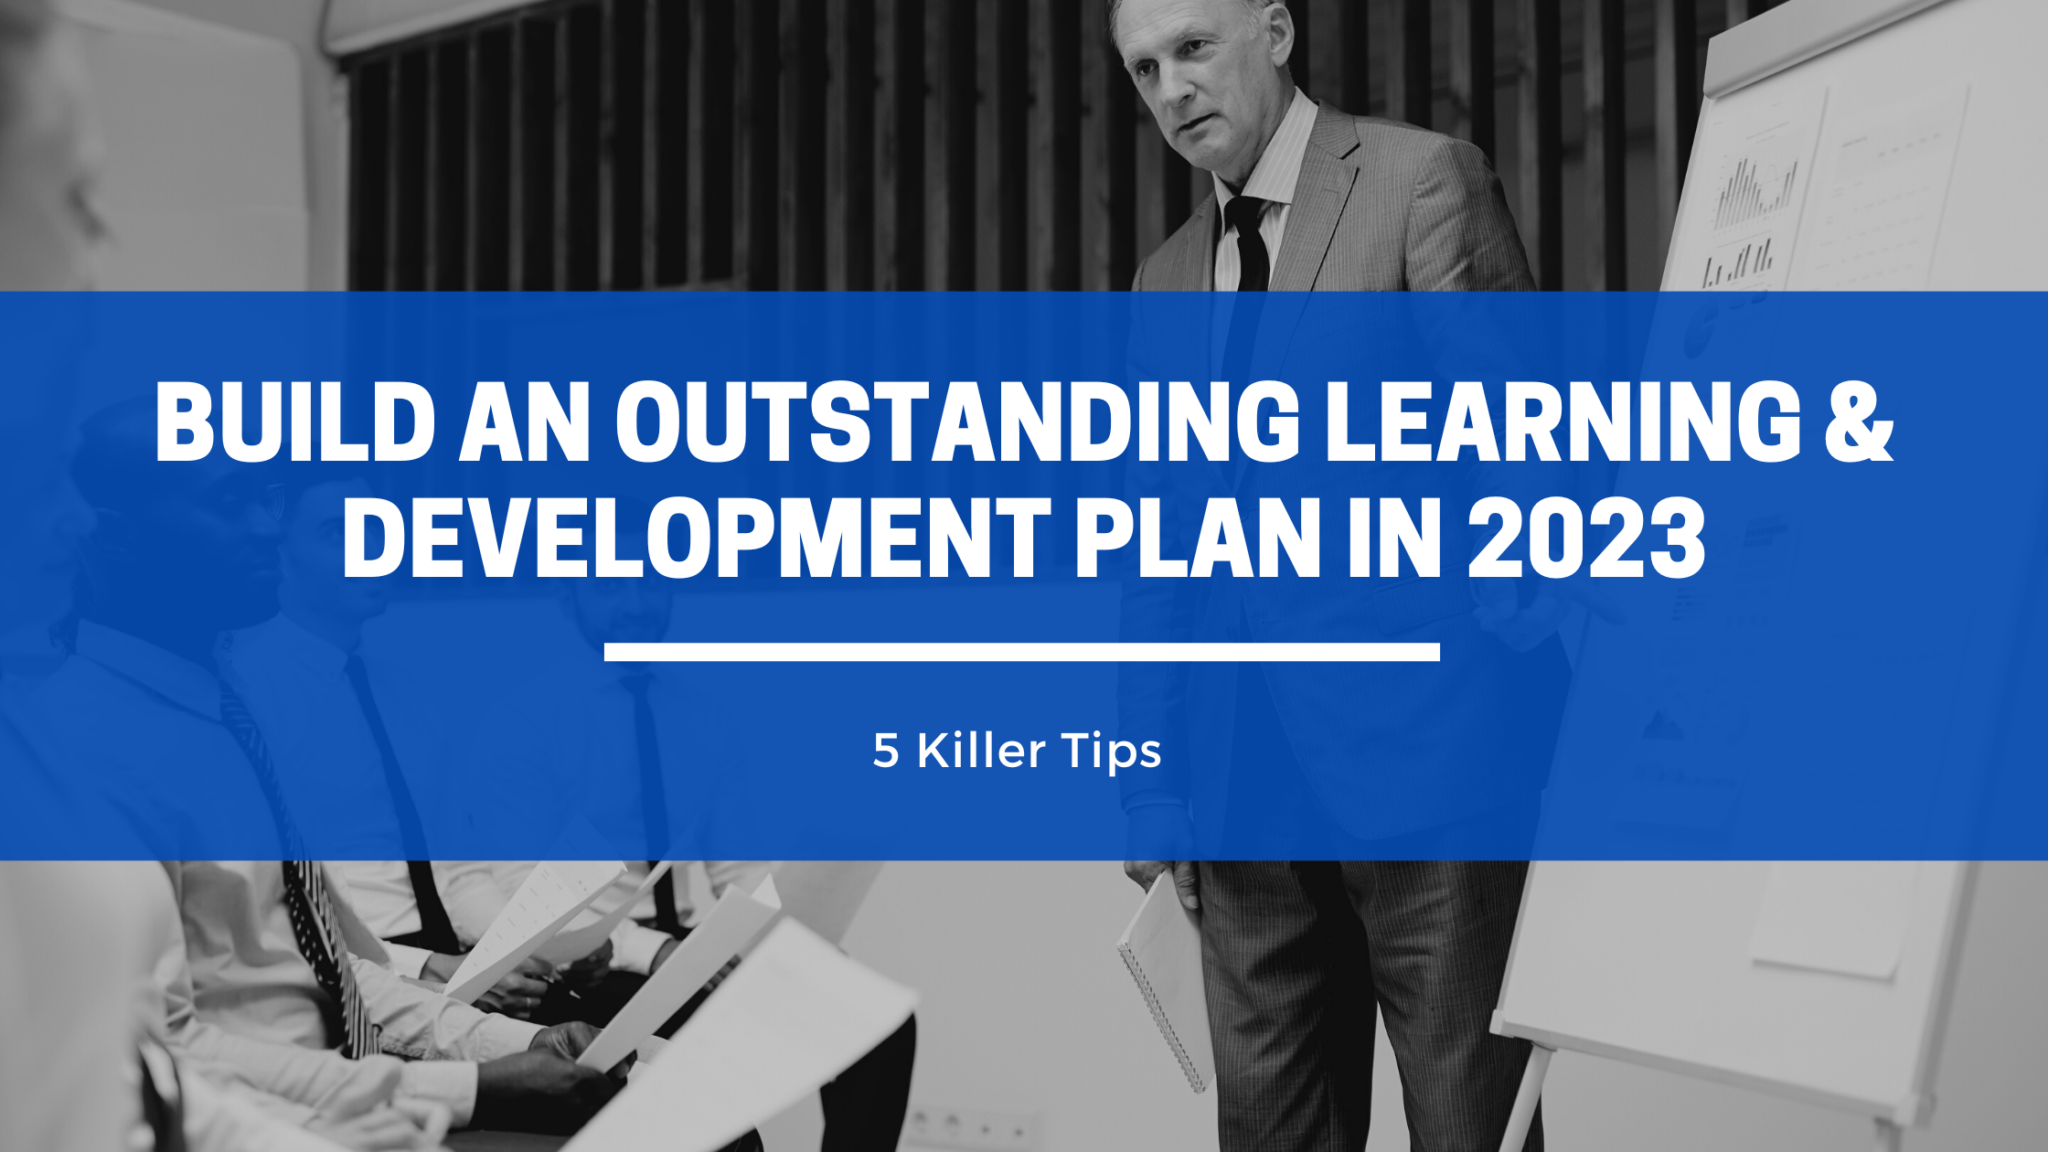 Learning & Development Plan 2023